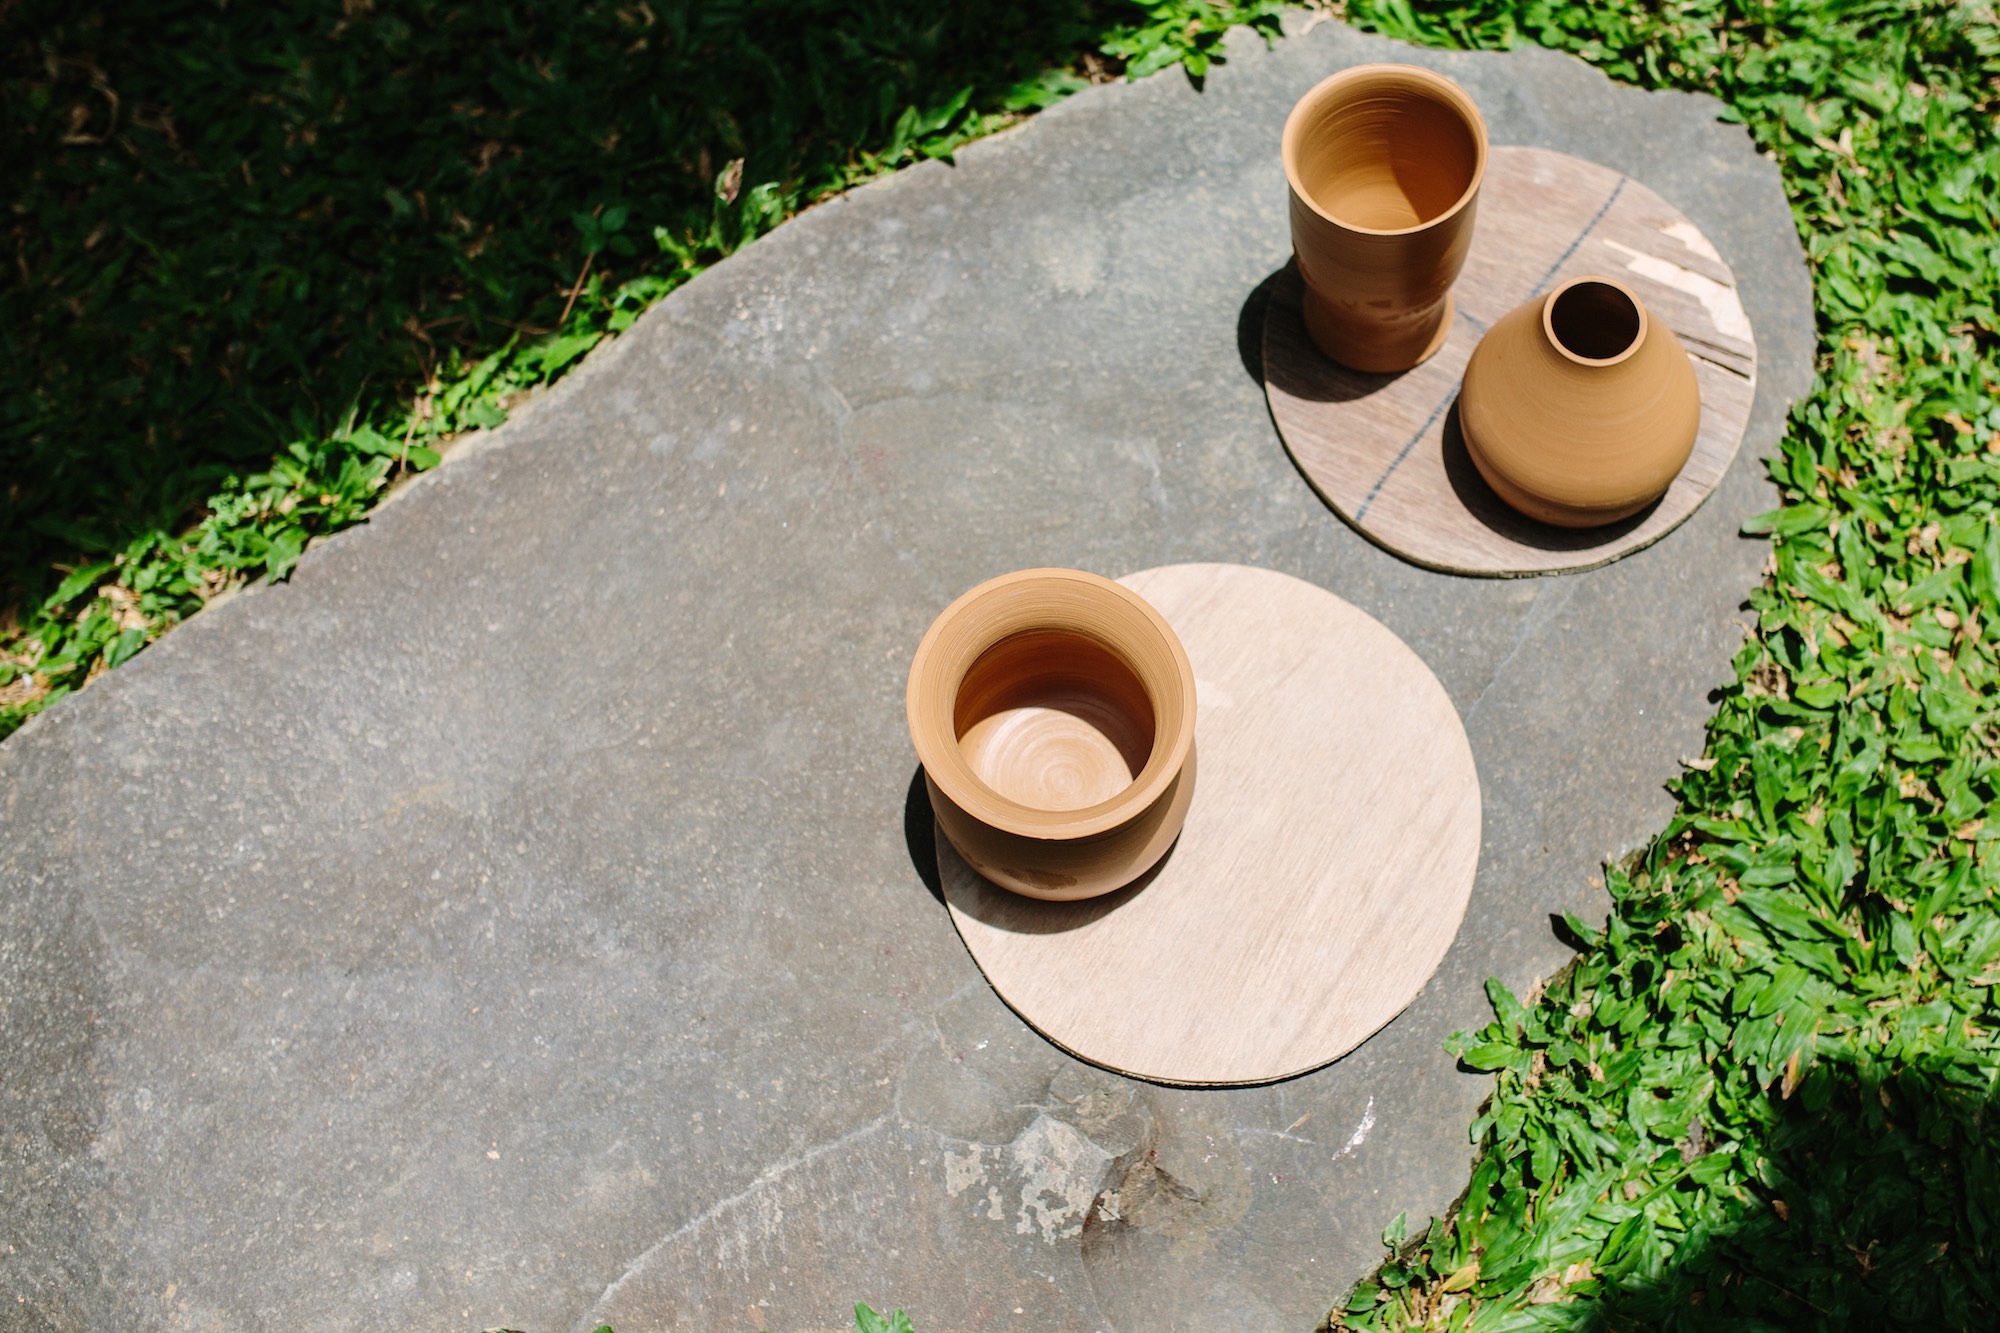 Learning Ceramics in Ubud